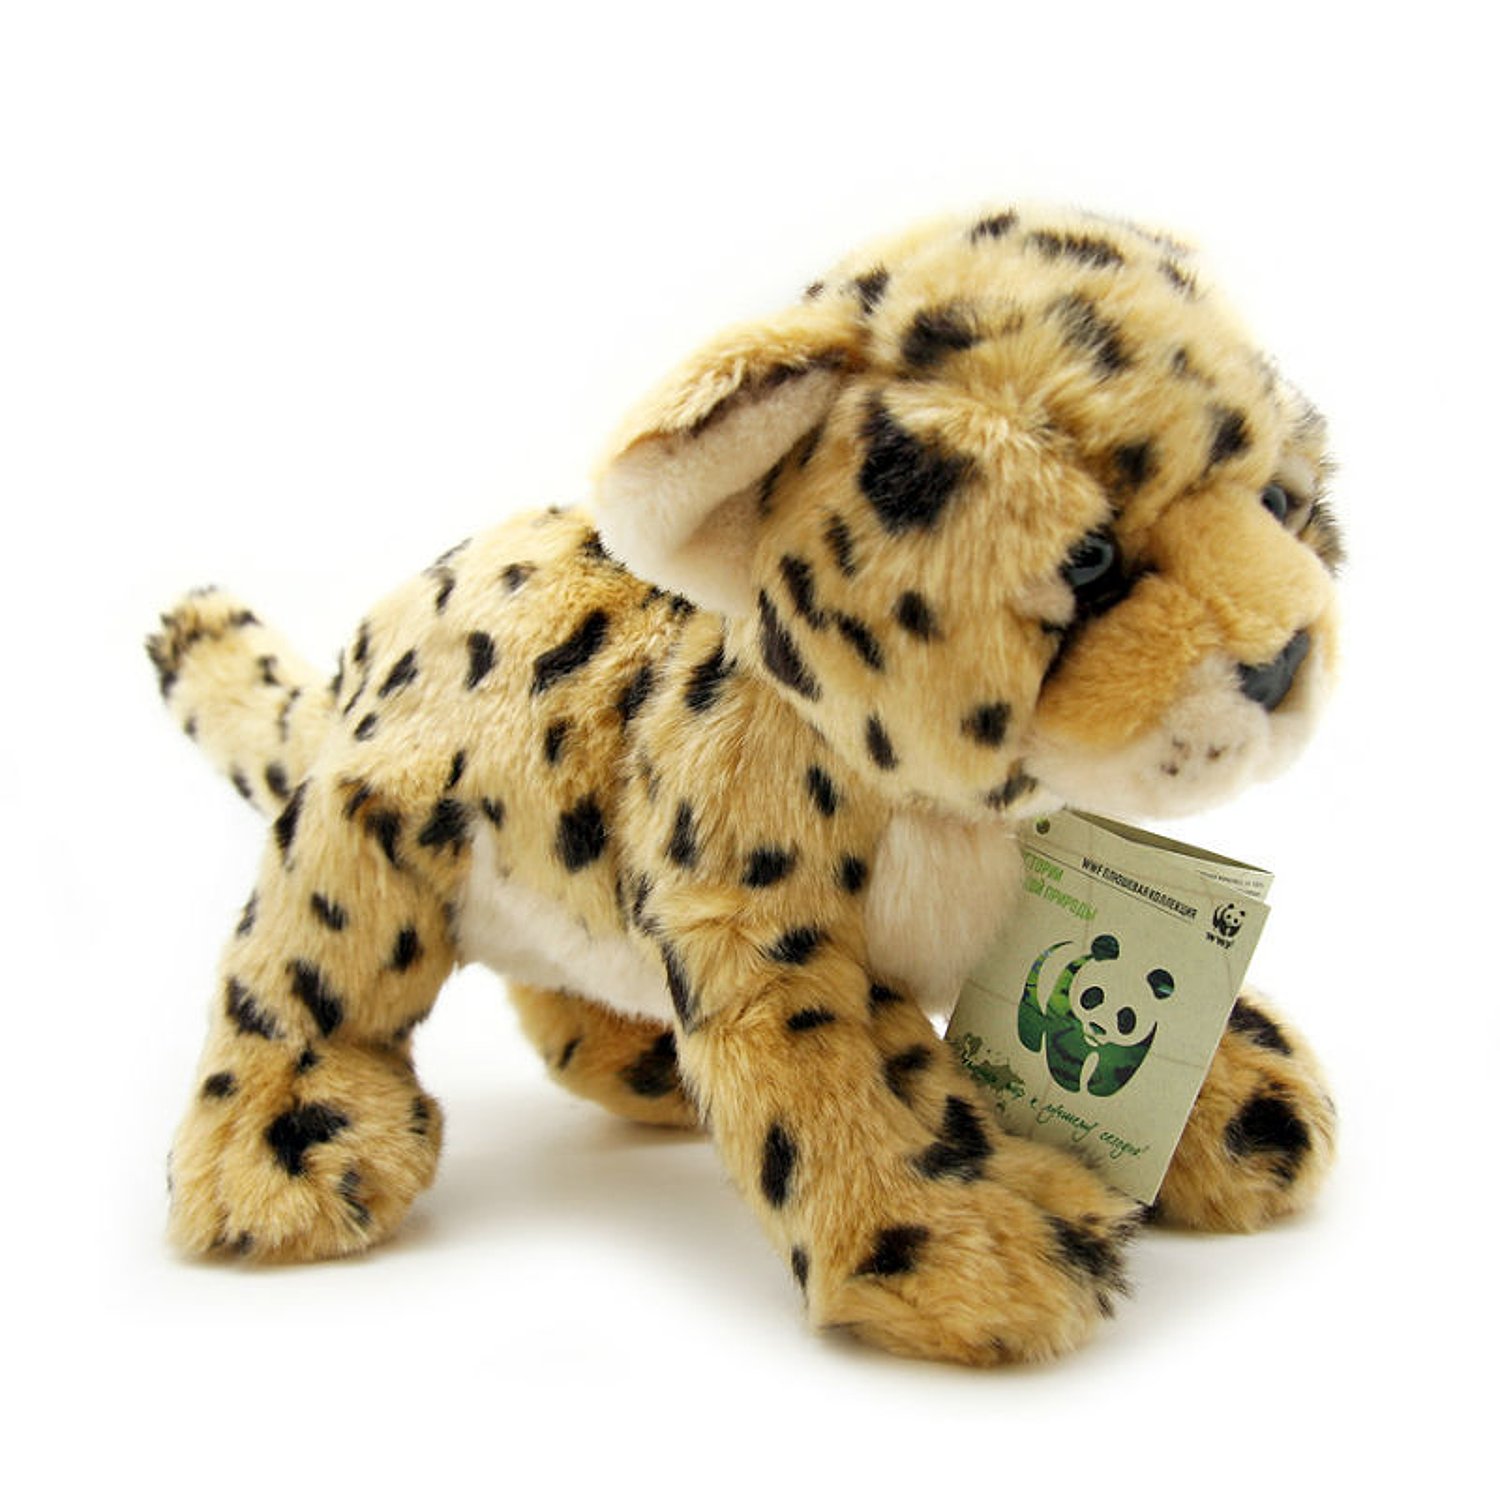 Мягкие игрушки животных купить. Мягкая игрушка гепард WWF. Игрушка леопард мягкая WWF. Мягкая игрушка Aurora леопард. WWF игрушка леопард.